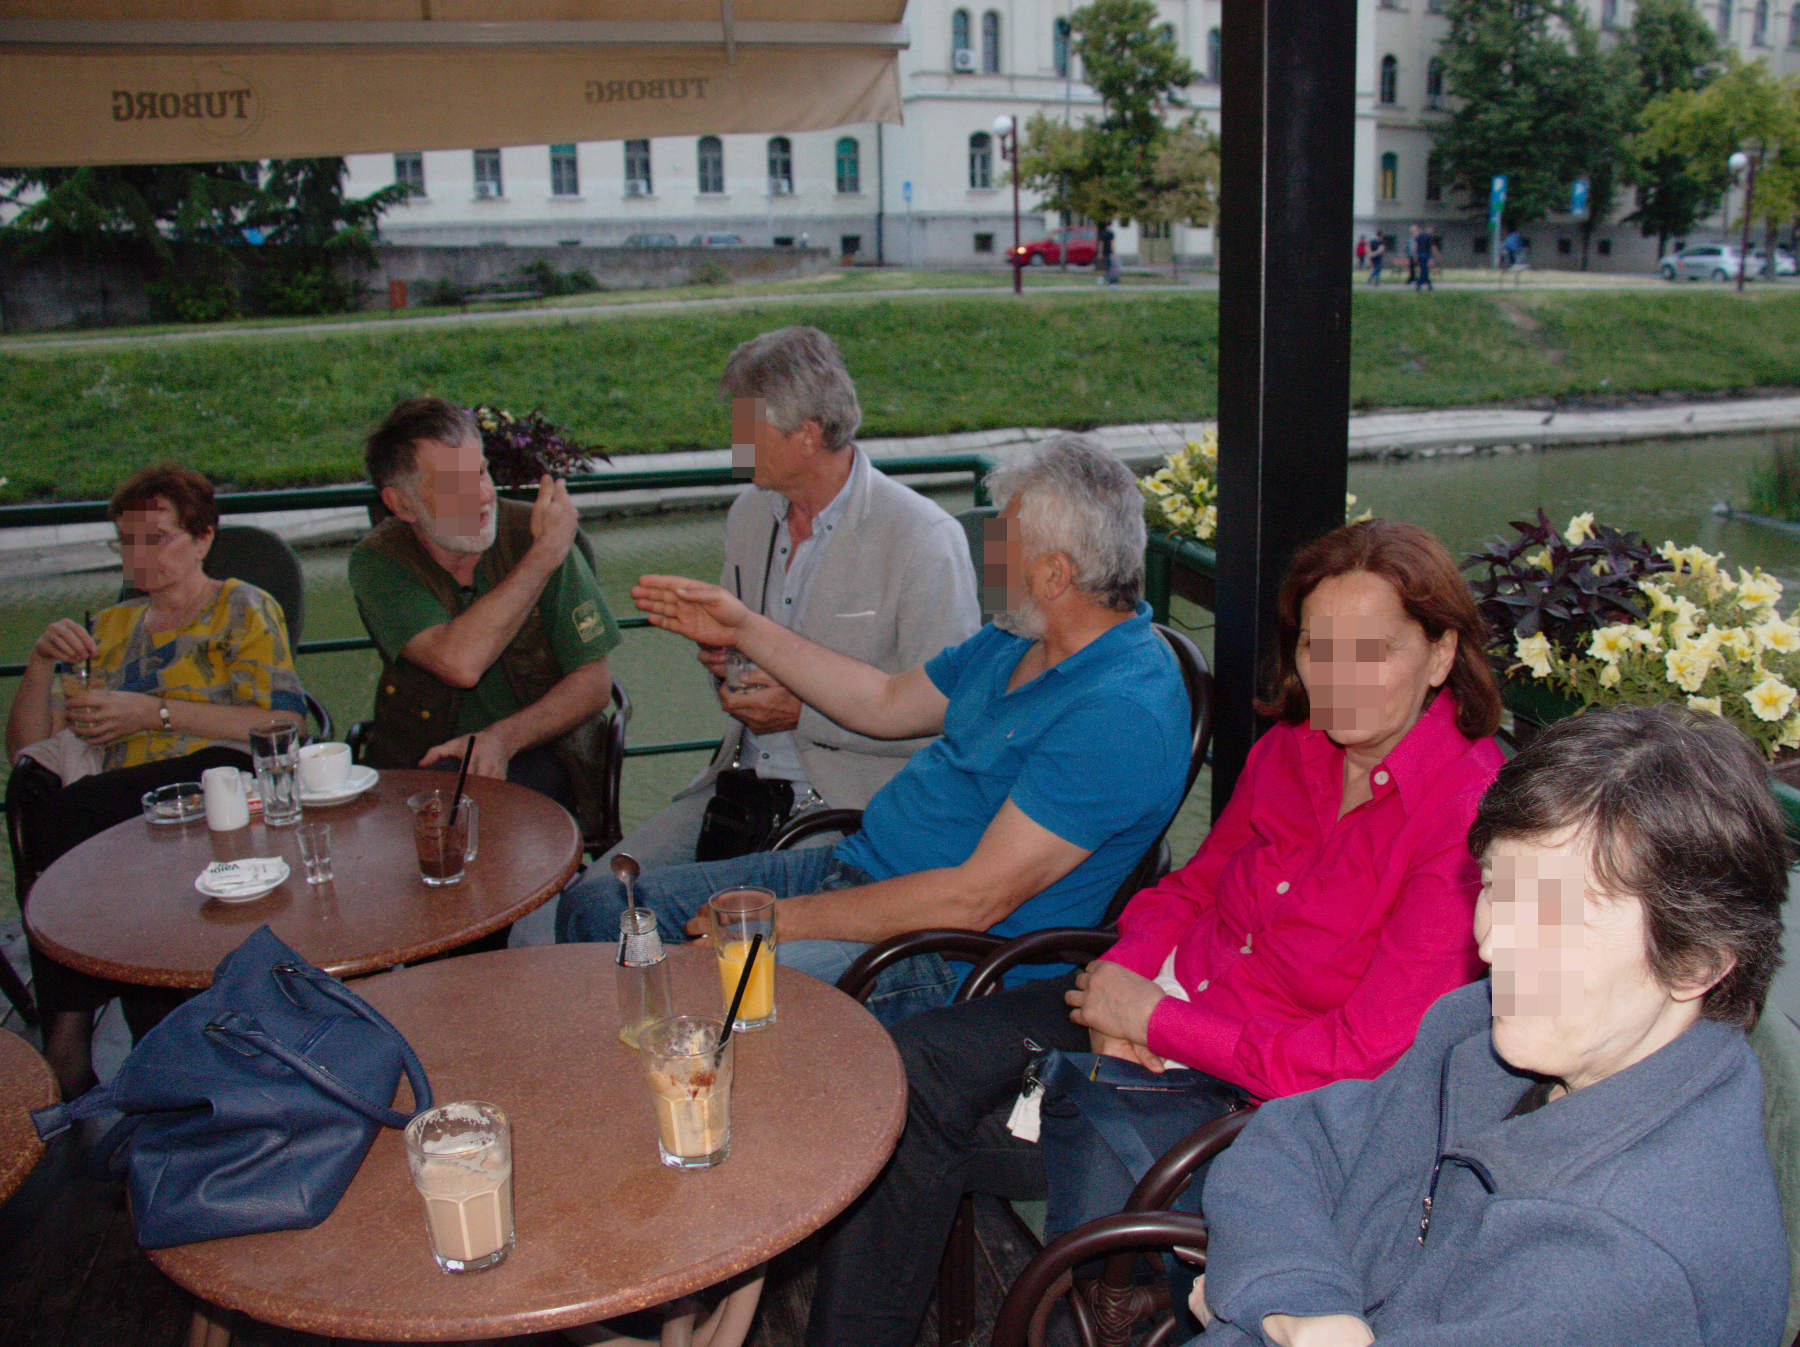 From left to right, Milica, Gavra, Vlada, Jozda, J., Vladimira